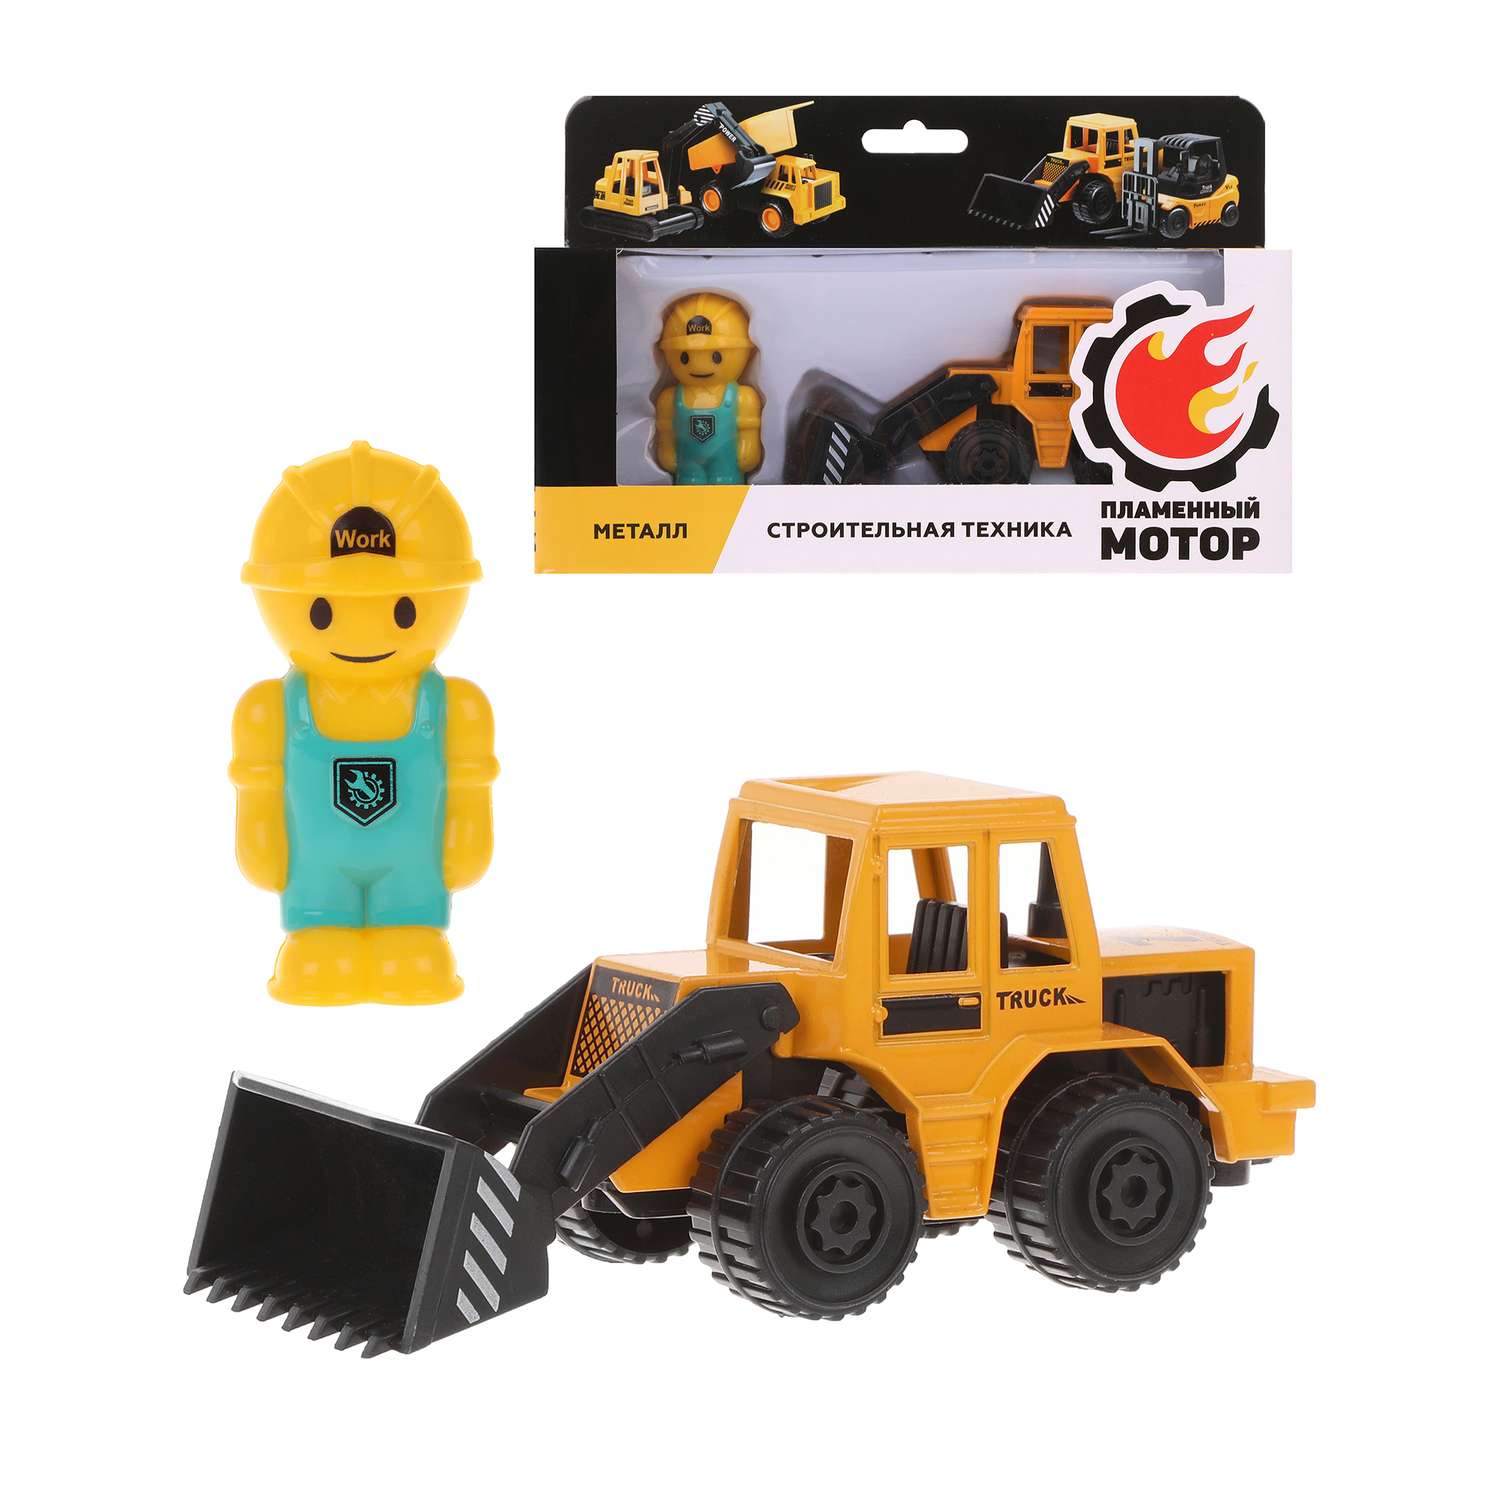 Игровой набор Пламенный мотор для мальчика трактор и фигурка строителя 870719 - фото 1